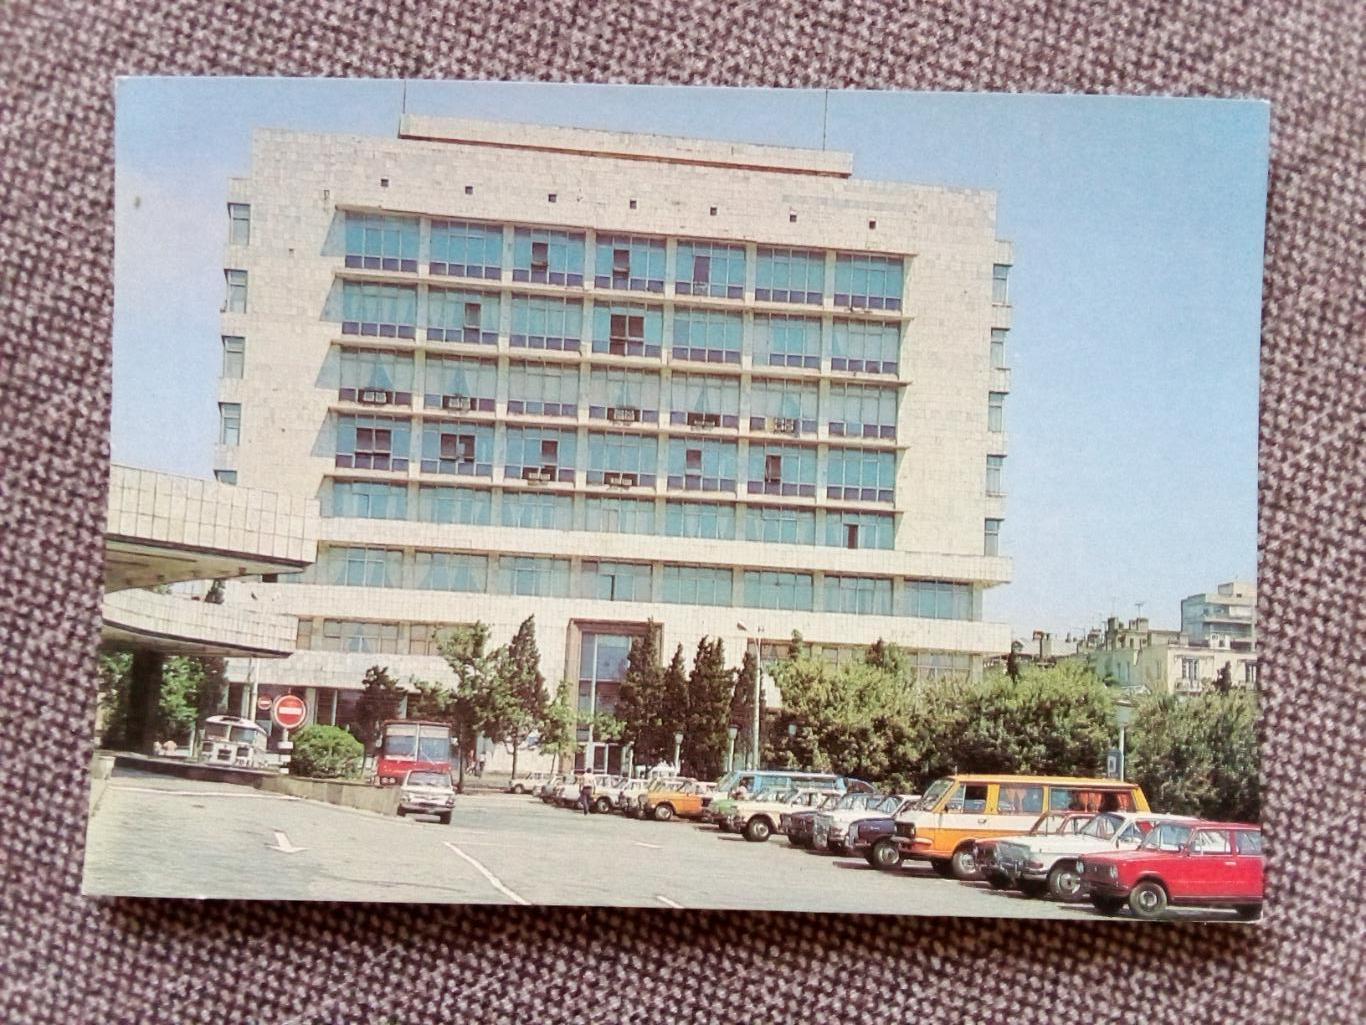 Города СССР : Баку (Азербайджан) - Почтамт 1983 г. (почтовая открытка с маркой)